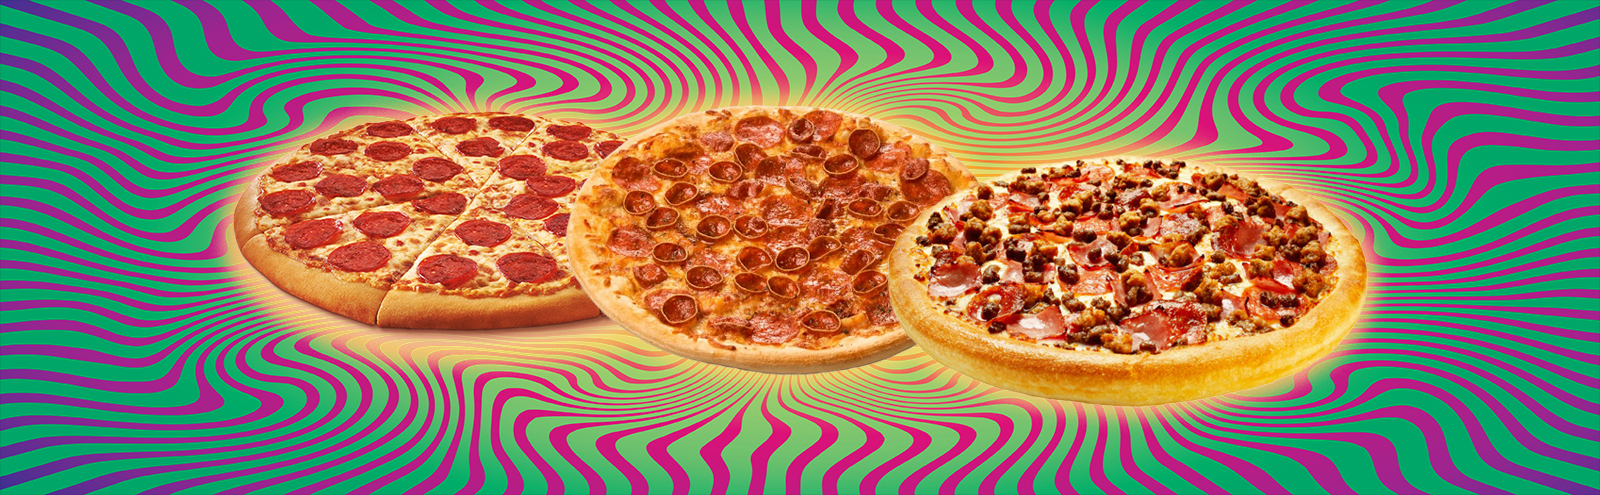 pizza-tf-uproxx-1.jpg